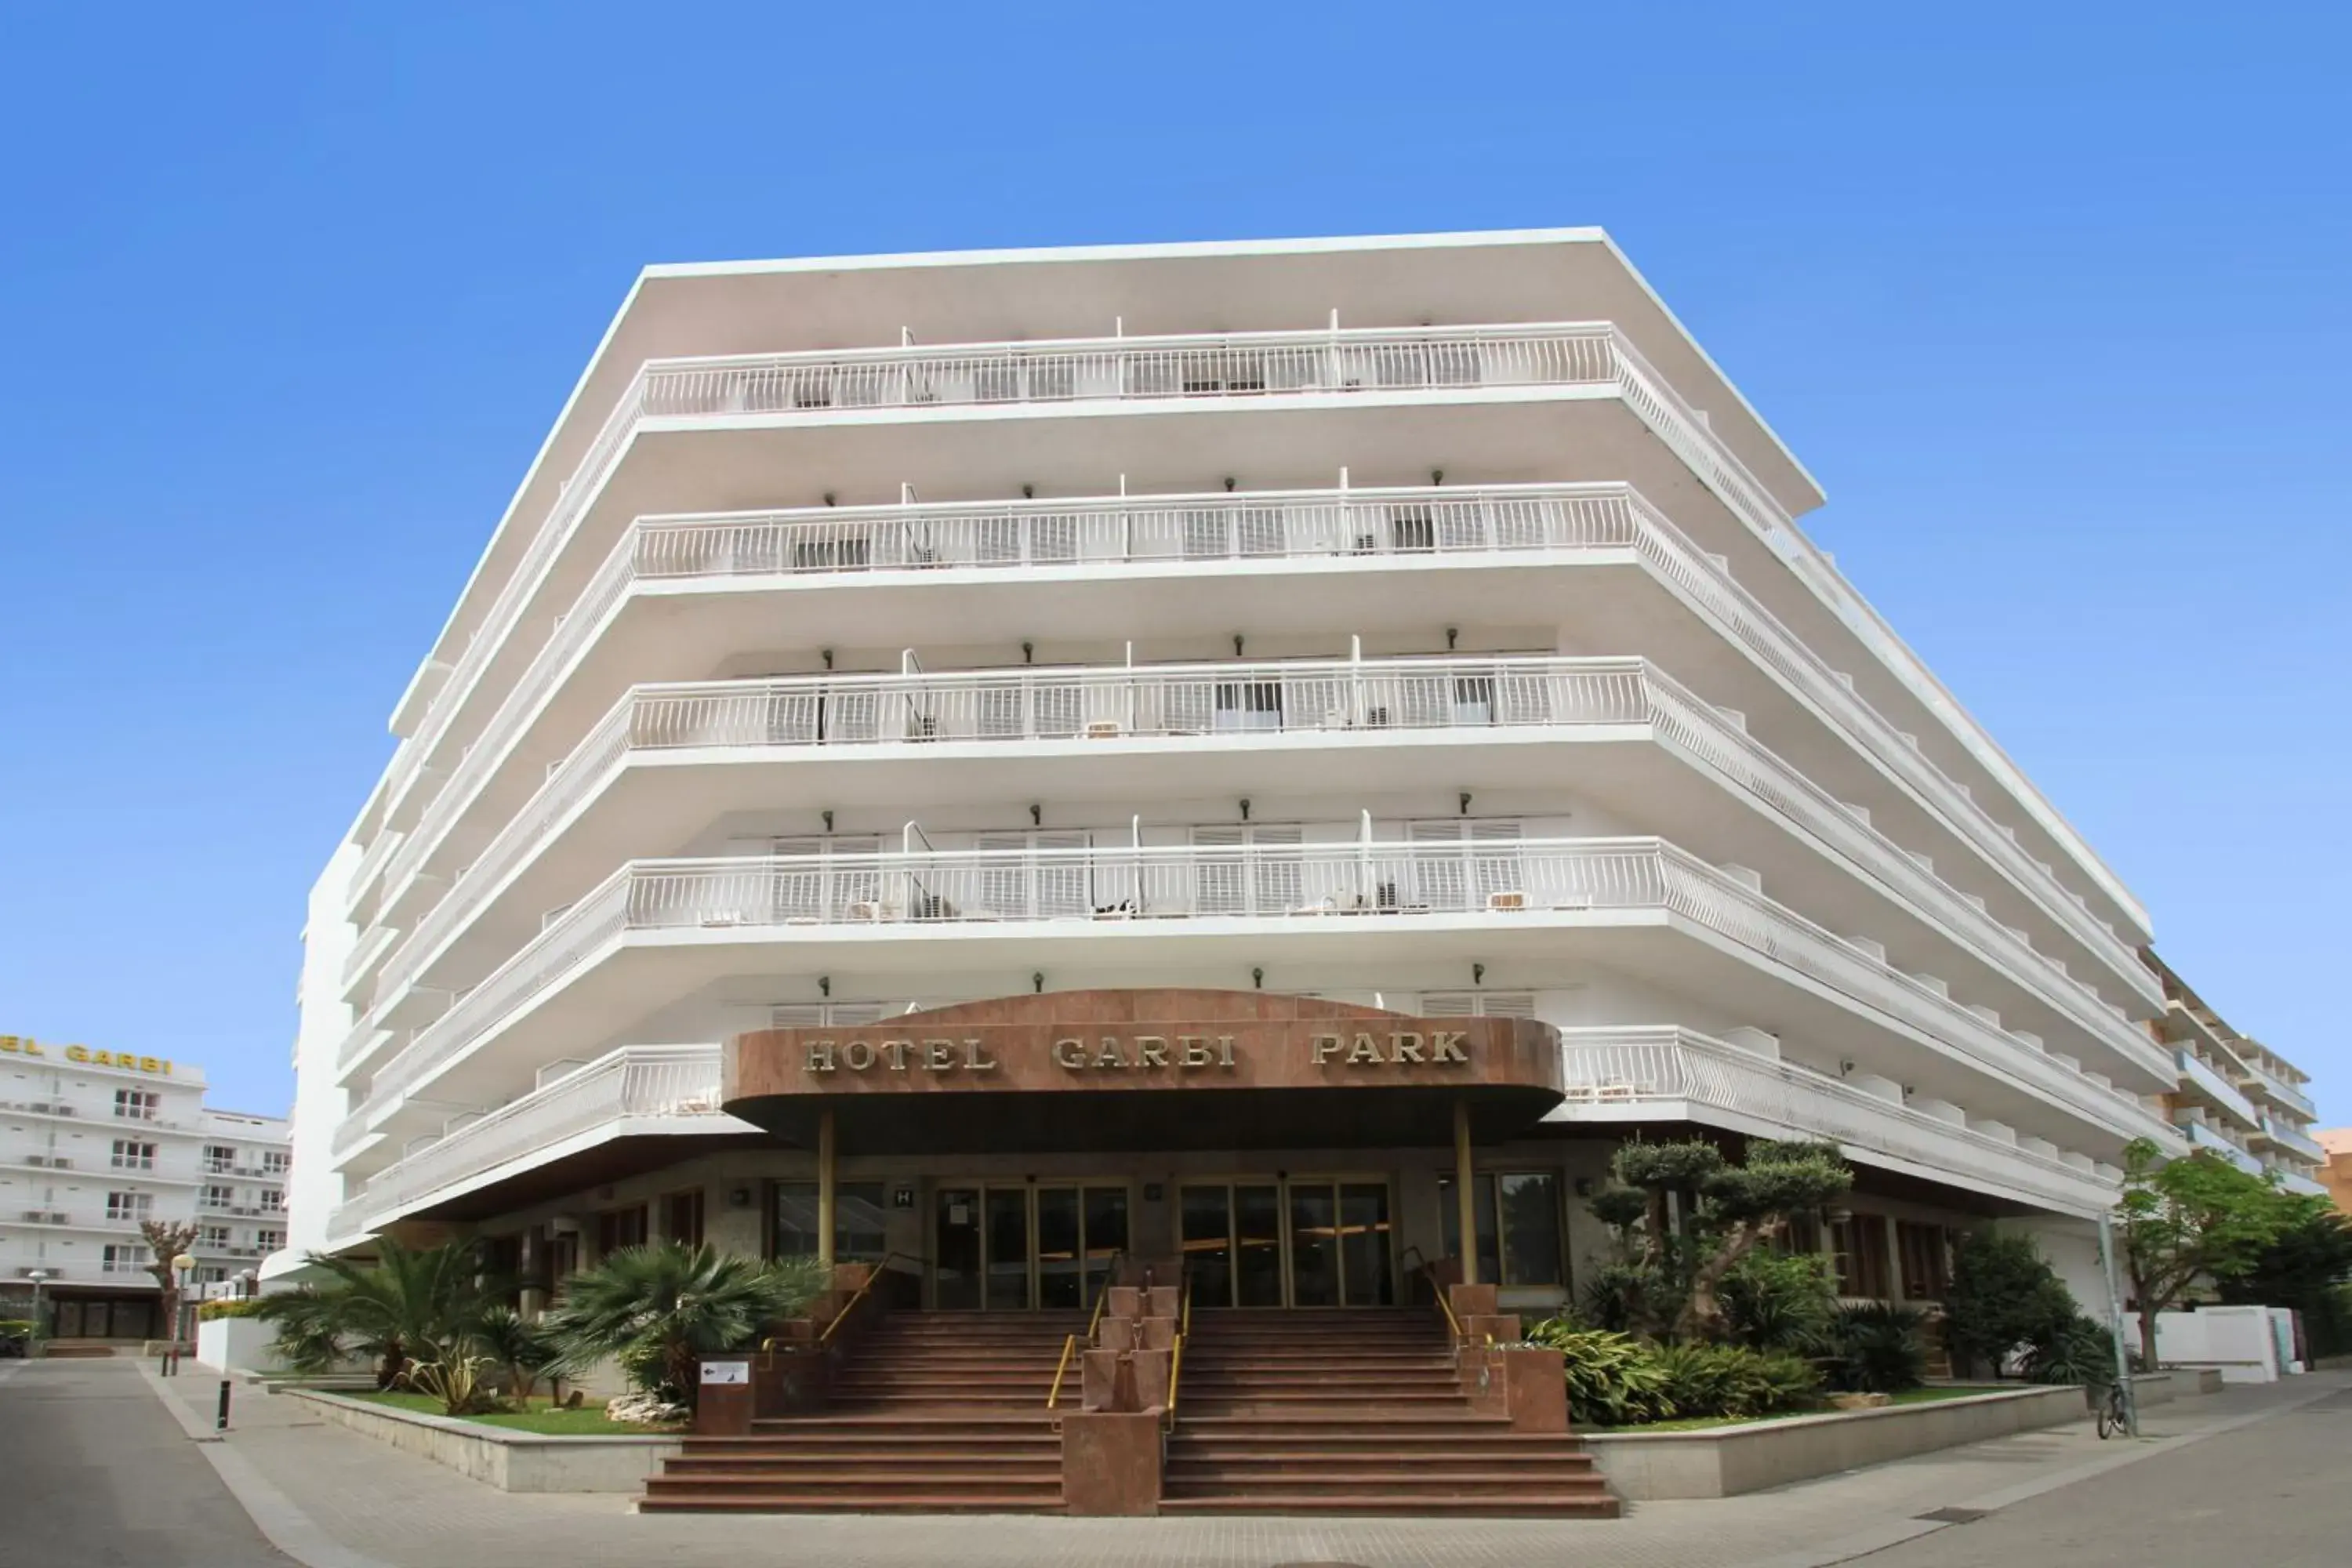 Property Building in Garbi Park Lloret Hotel